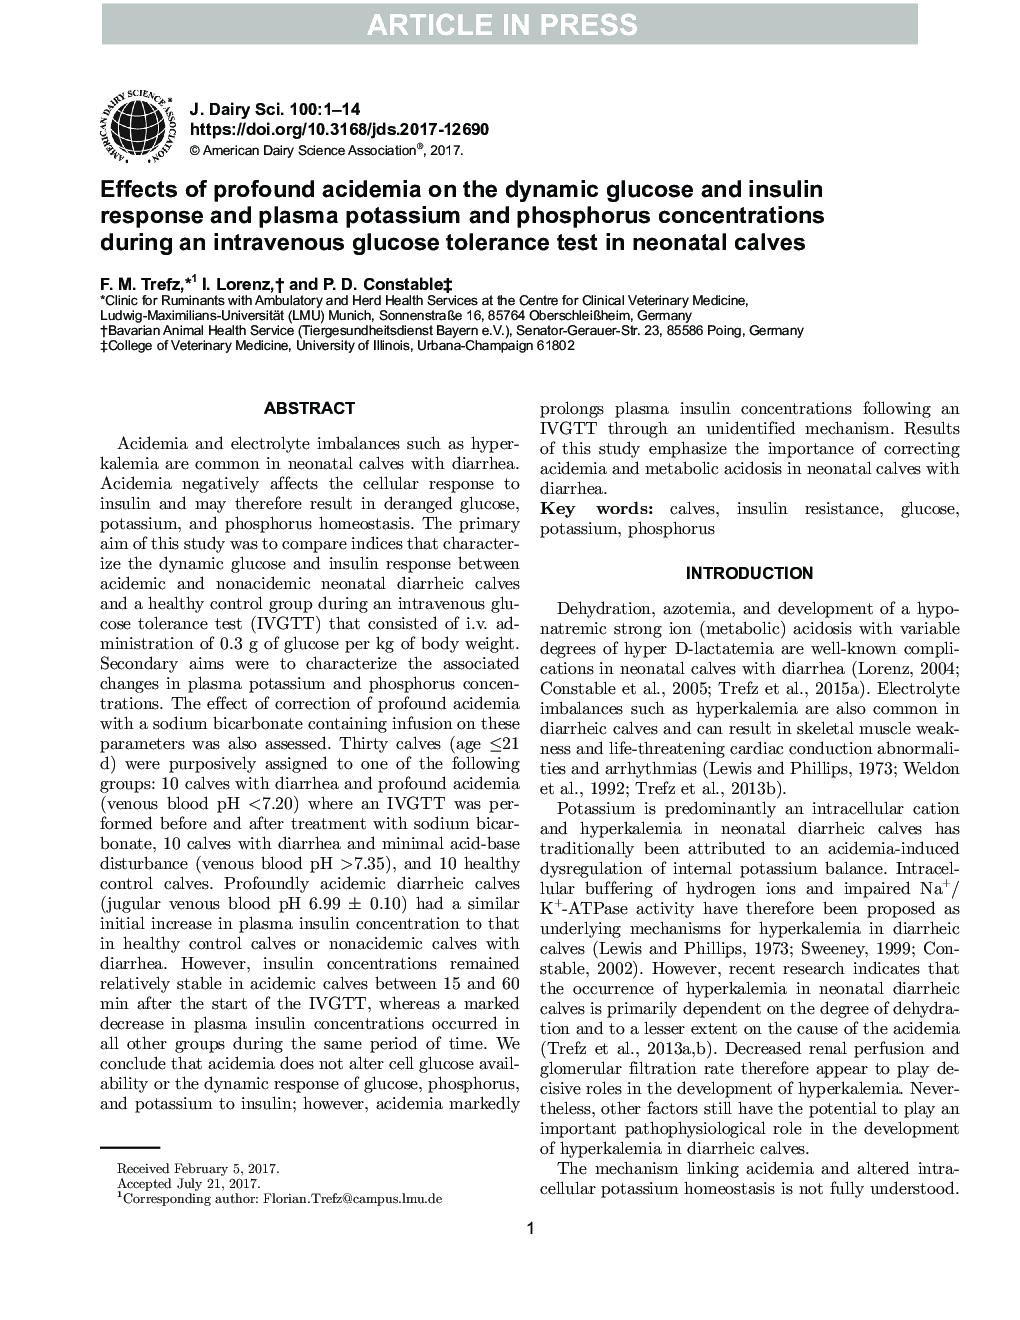 اثرات اسیدمی عمیق بر پاسخ گلوکز و انسولین پویا و غلظت پتاسیم و فسفر پلاسما در طی آزمایش تحمل گلوکز در گوساله های نوزادان 